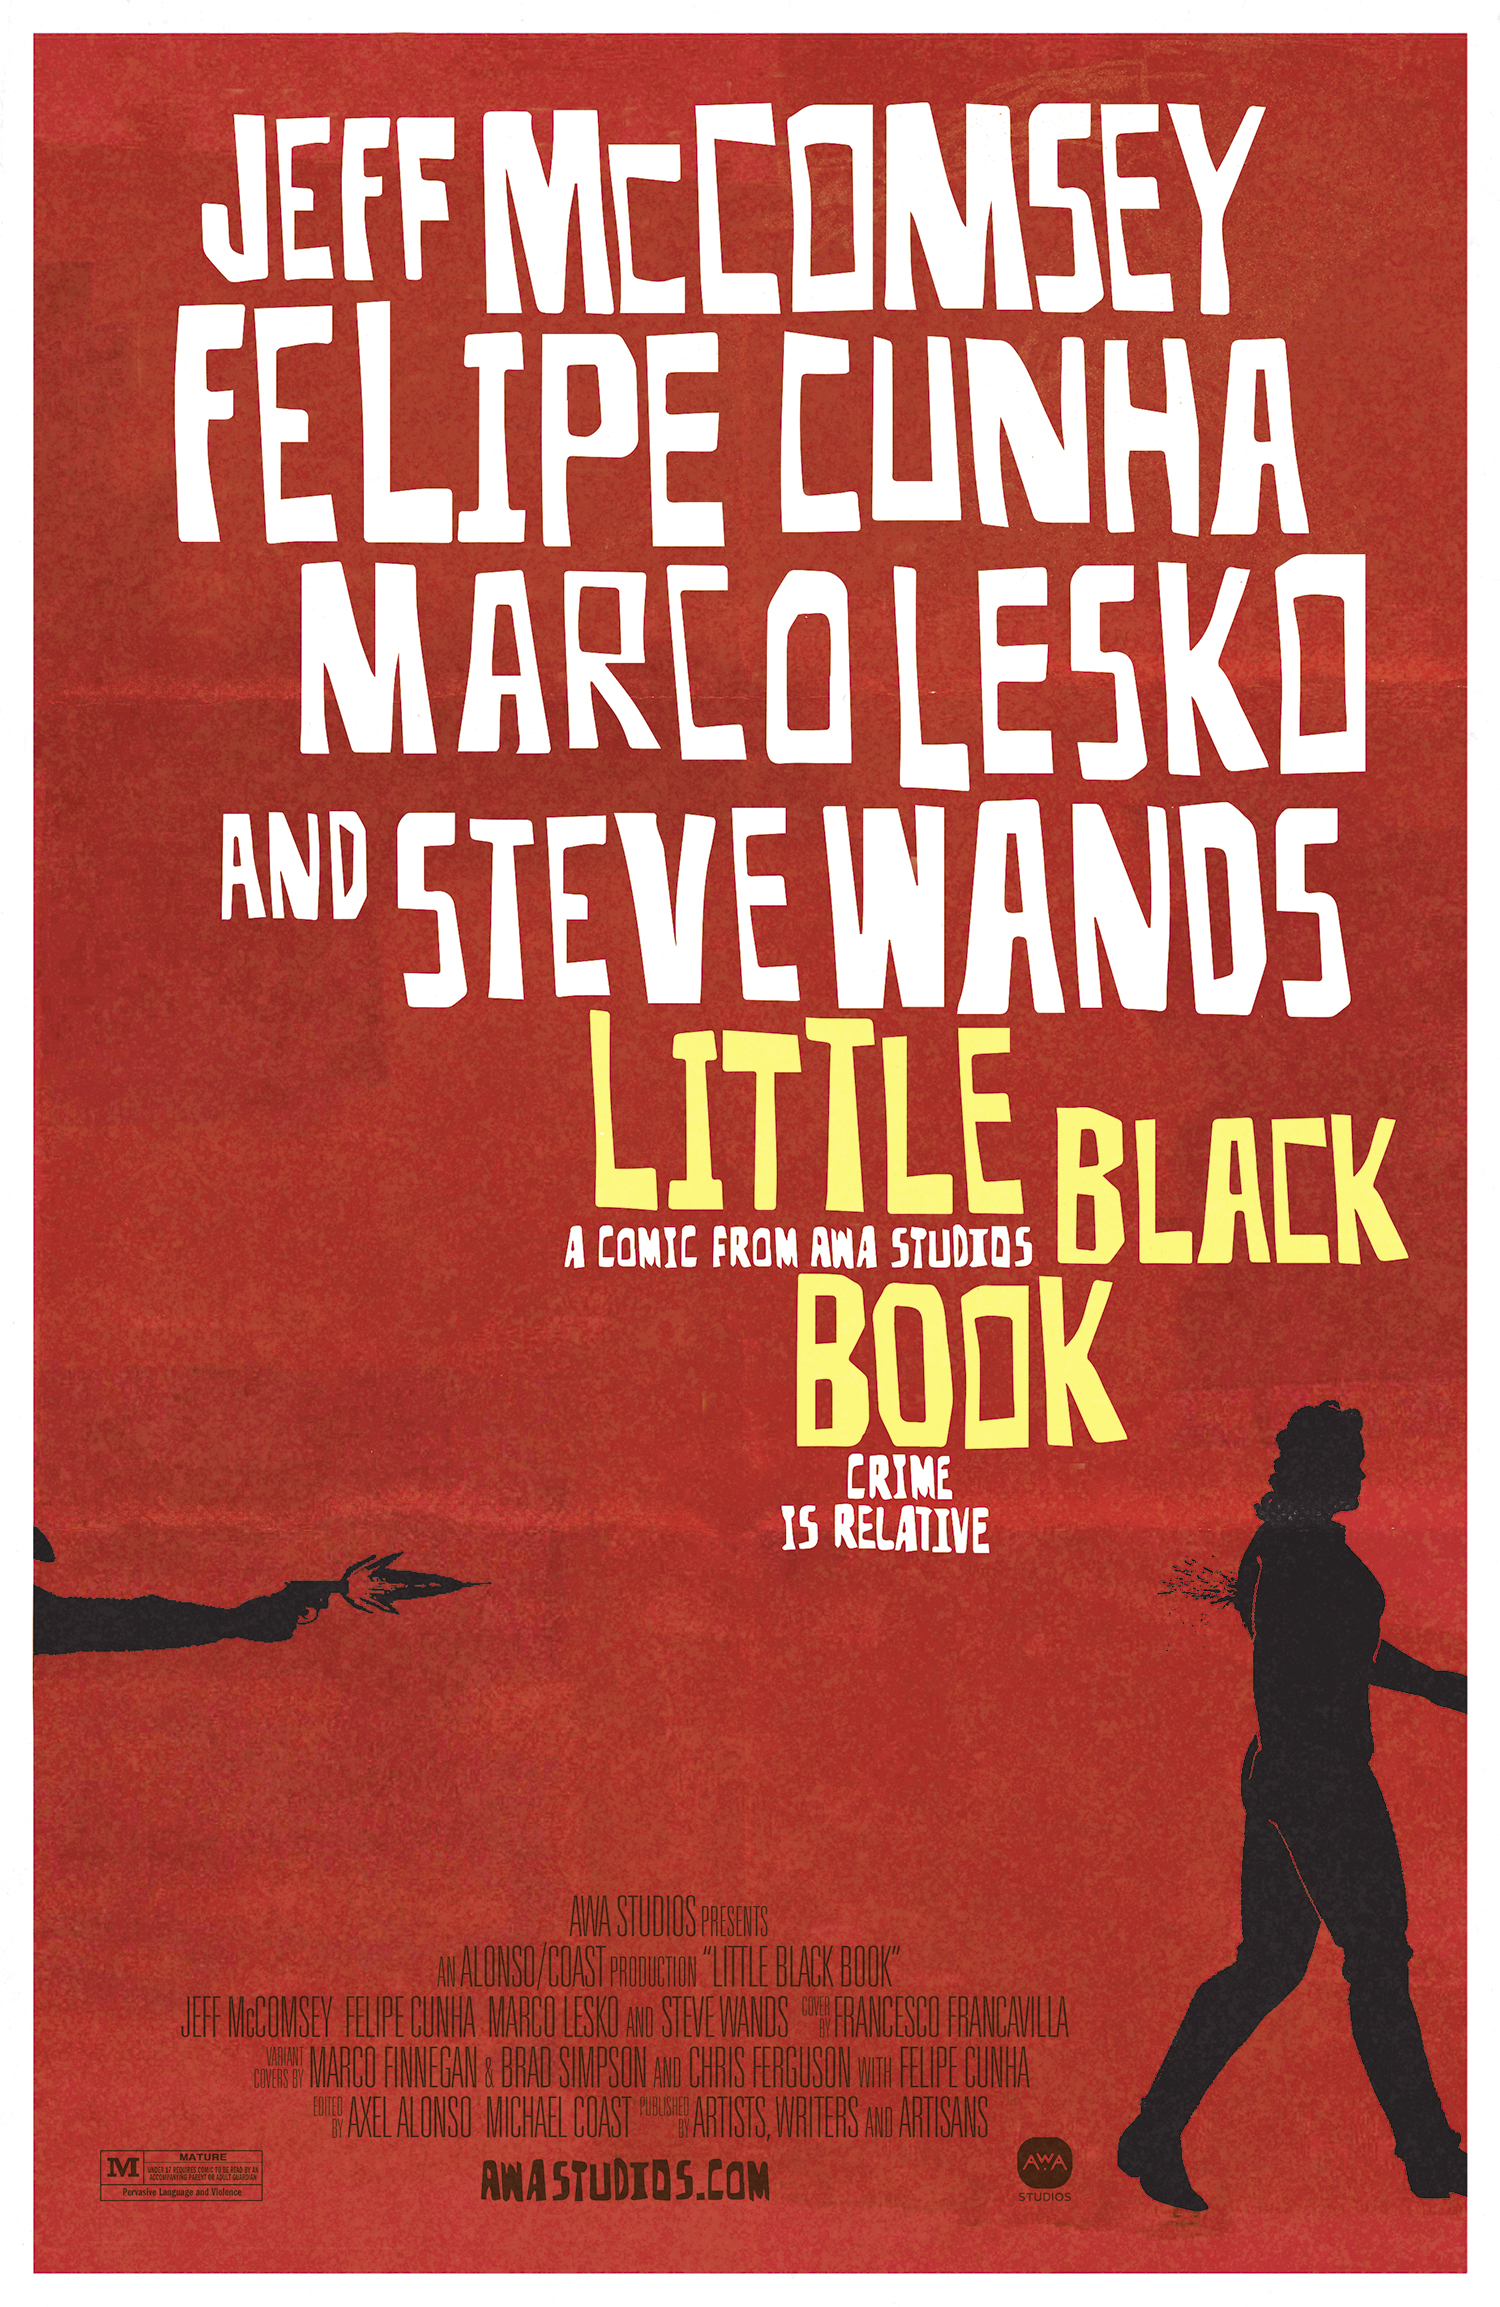 Little Black Book #3 Cover C Chris Ferguson & Felipe Cunha Movie Poster Homage Variant (Matur (Of 4)